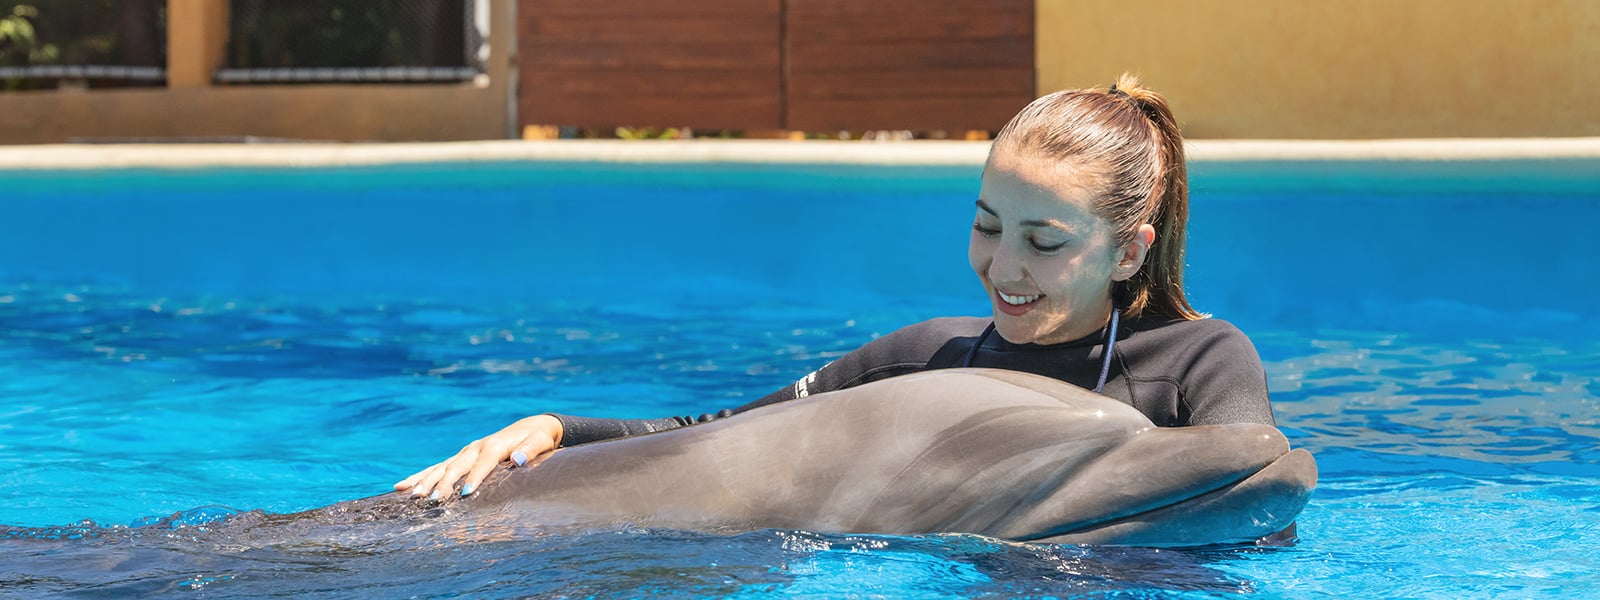 Dolphin kiss photo in Puerto Vallarta | Dolphin Adventure